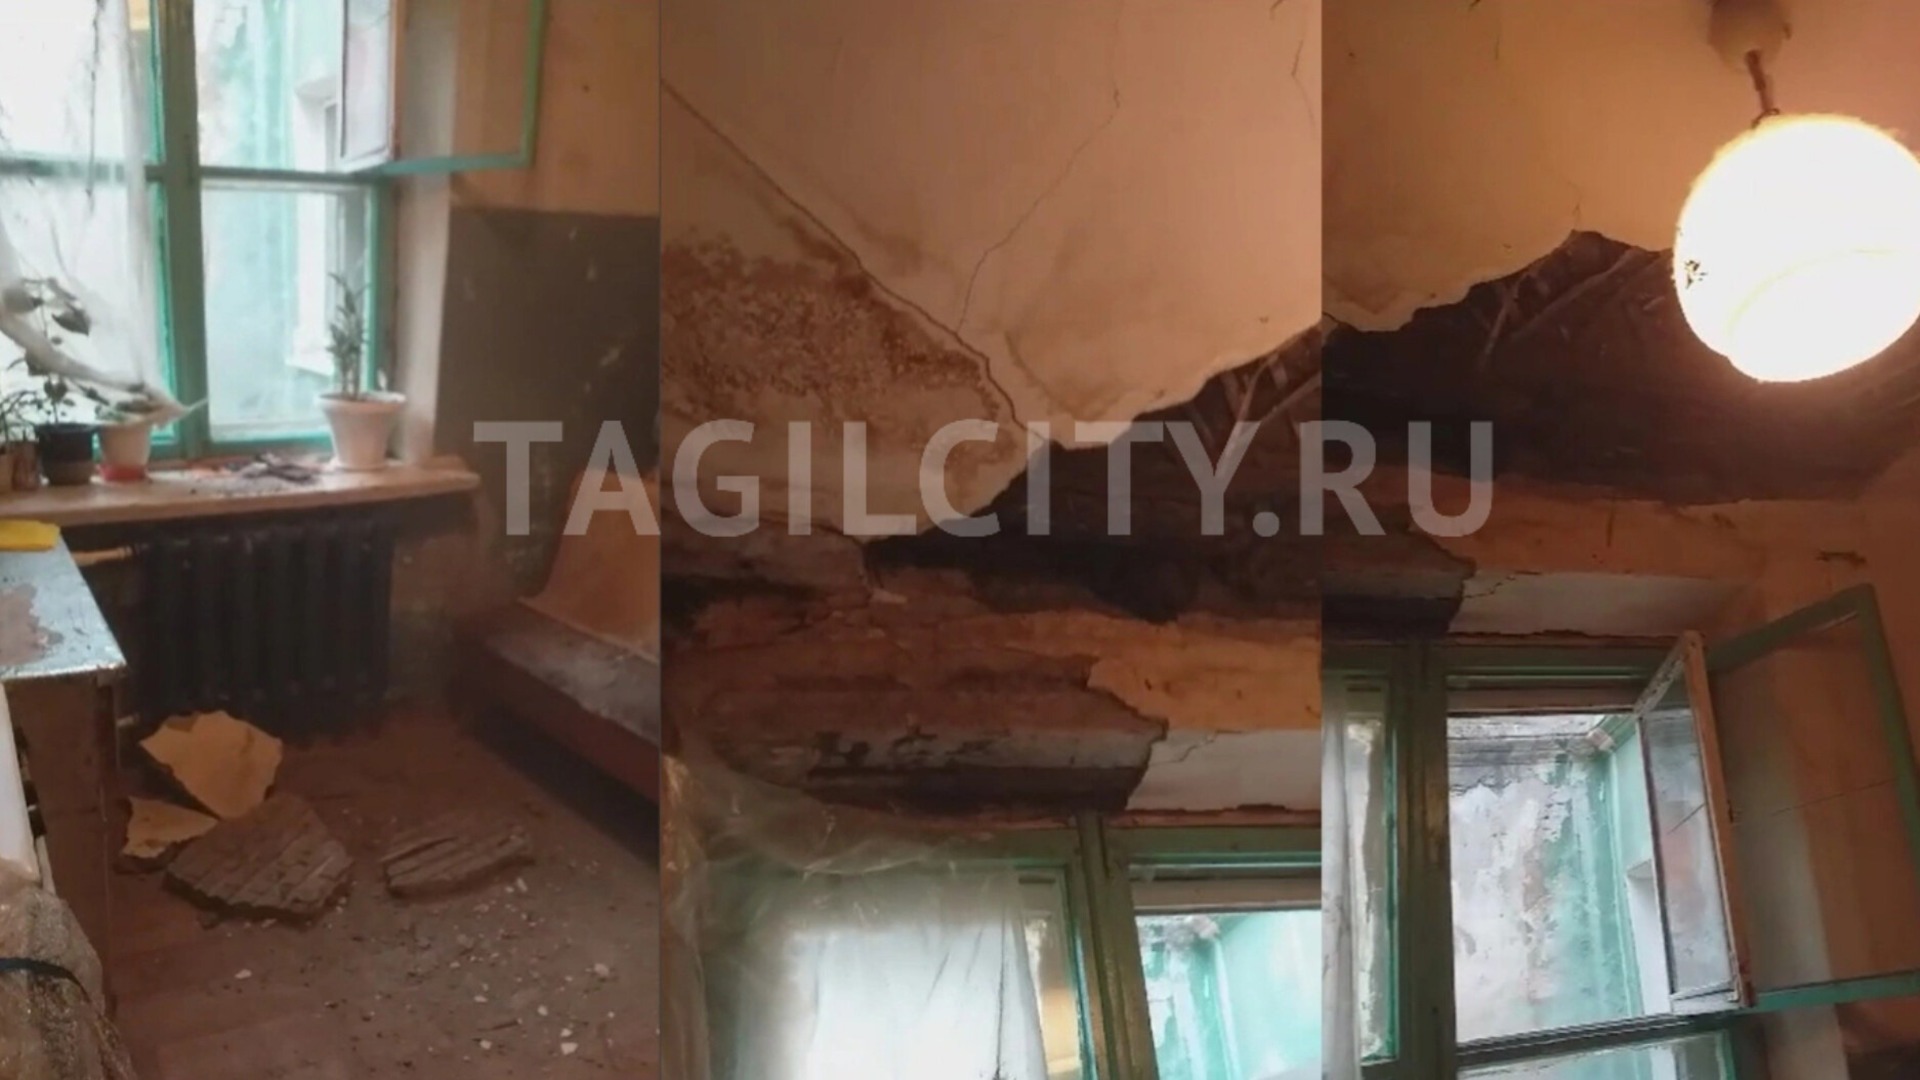 Потолок рухнул в квартире в Нижнем Тагиле